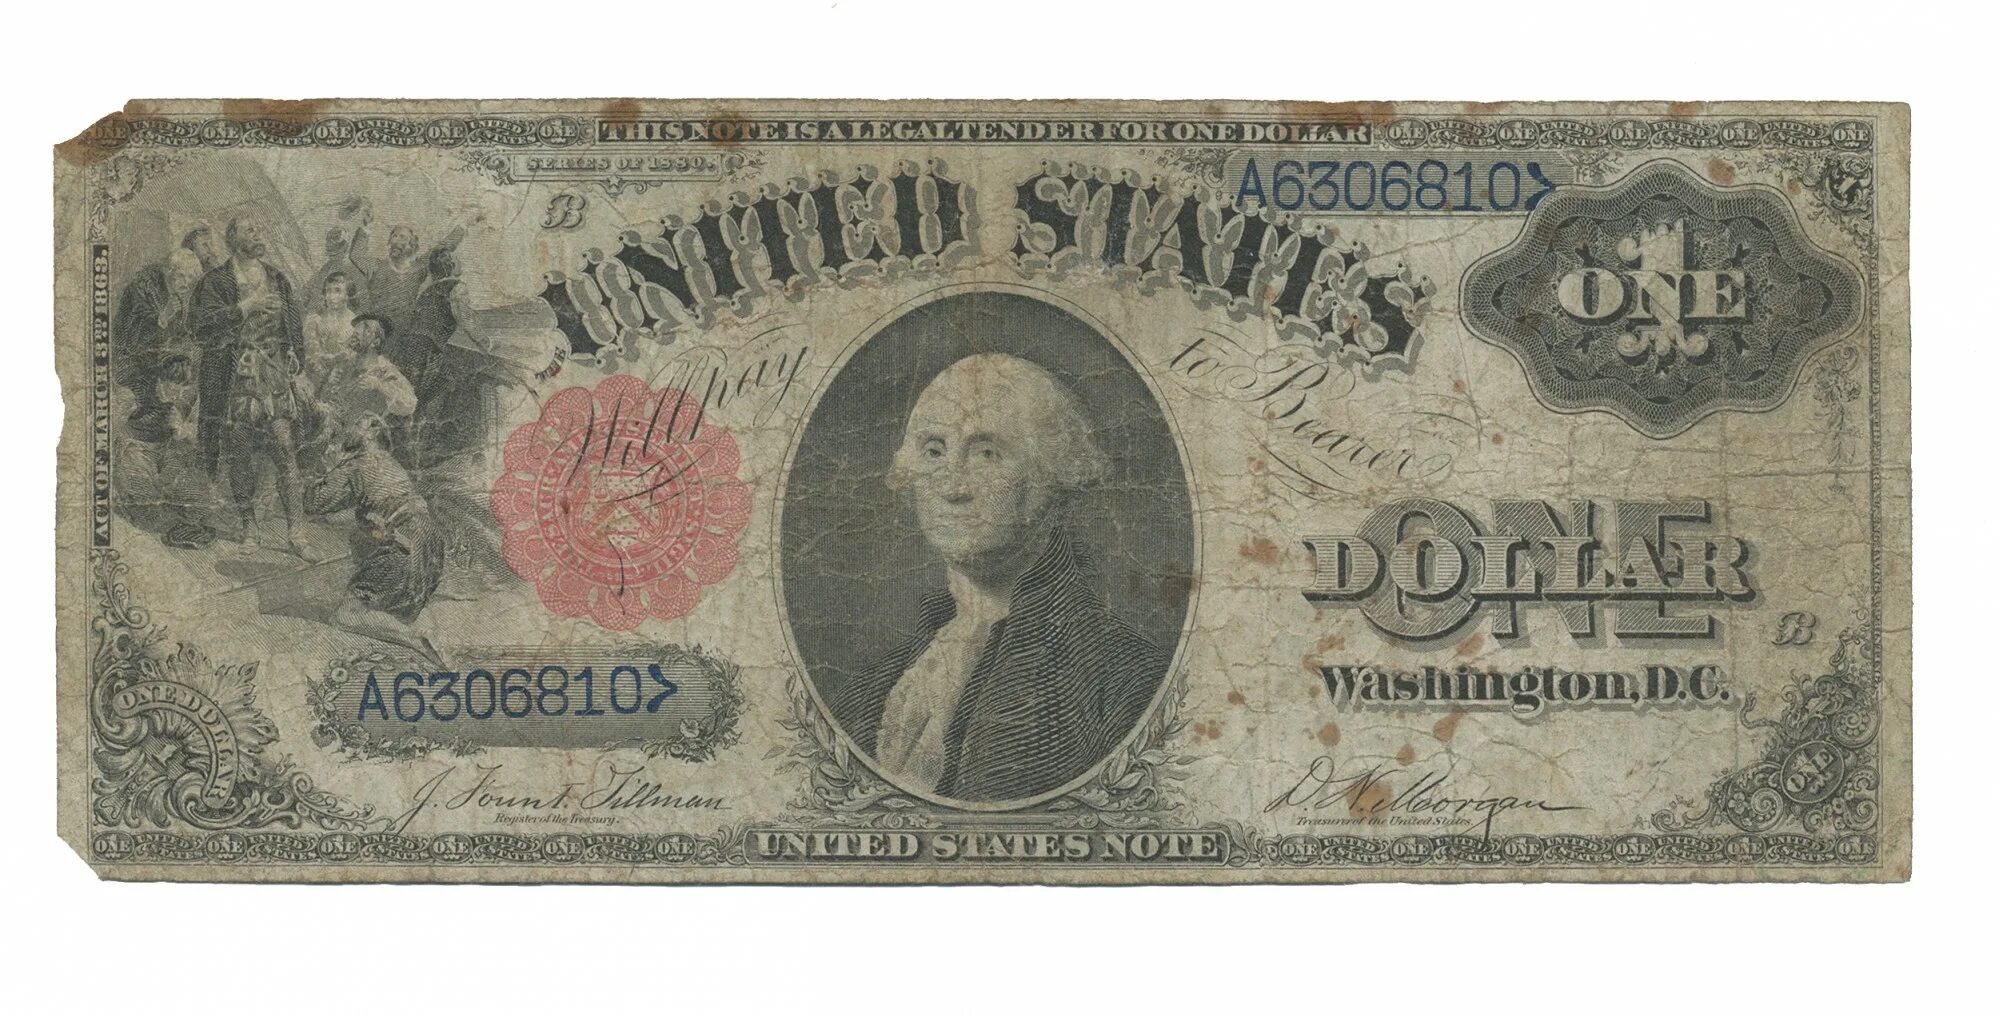 Е 1 доллар. Банкнота 1 доллар США. Первые банкноты США. Самый первый доллар. Первый американский доллар.